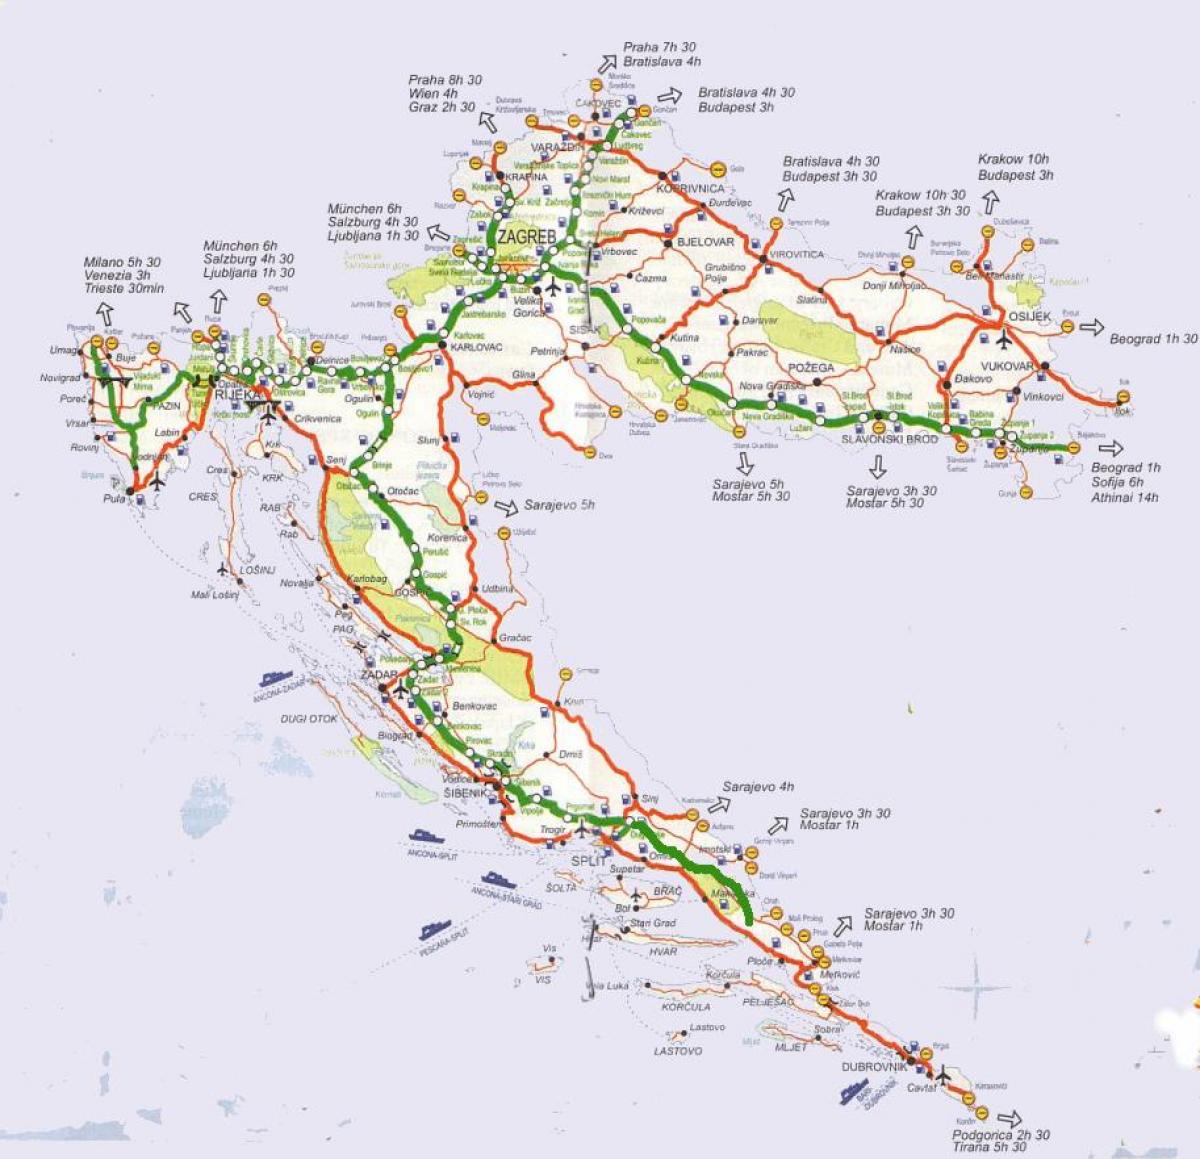 detailed road map of croatia